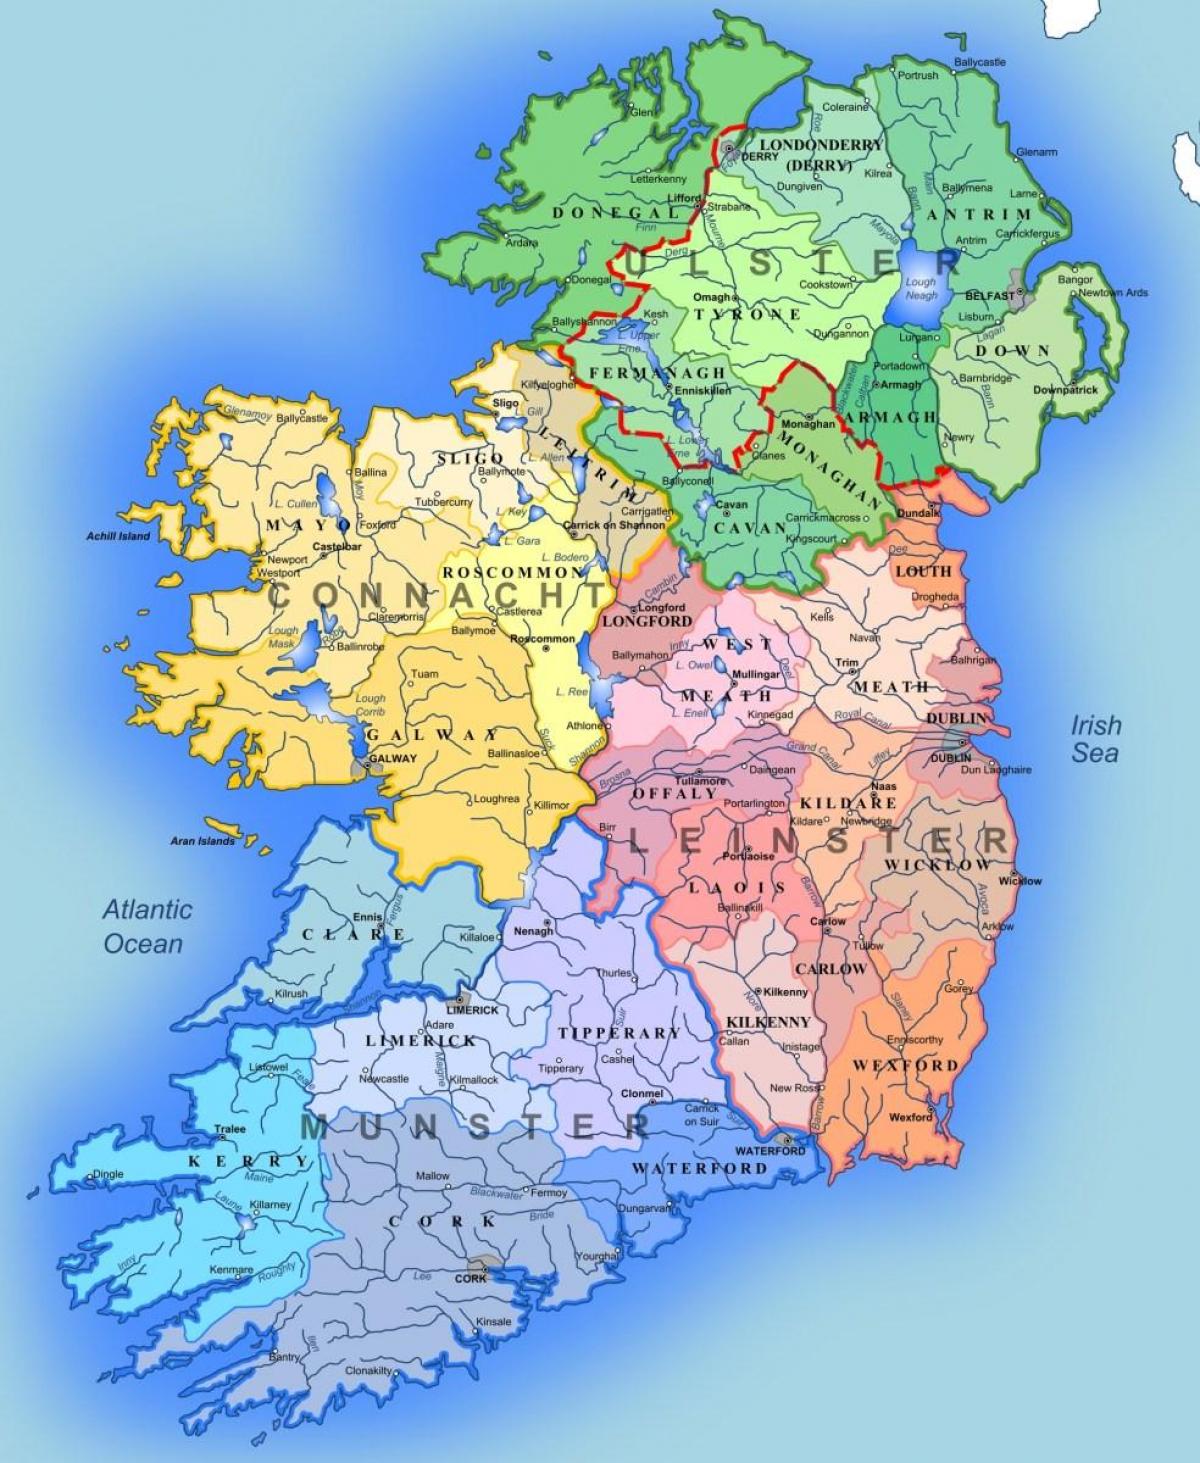 Joet irlannin kartta lapsille - Kartta jokien irlannin kartta lapsille  (Pohjois-Eurooppa - Eurooppa)